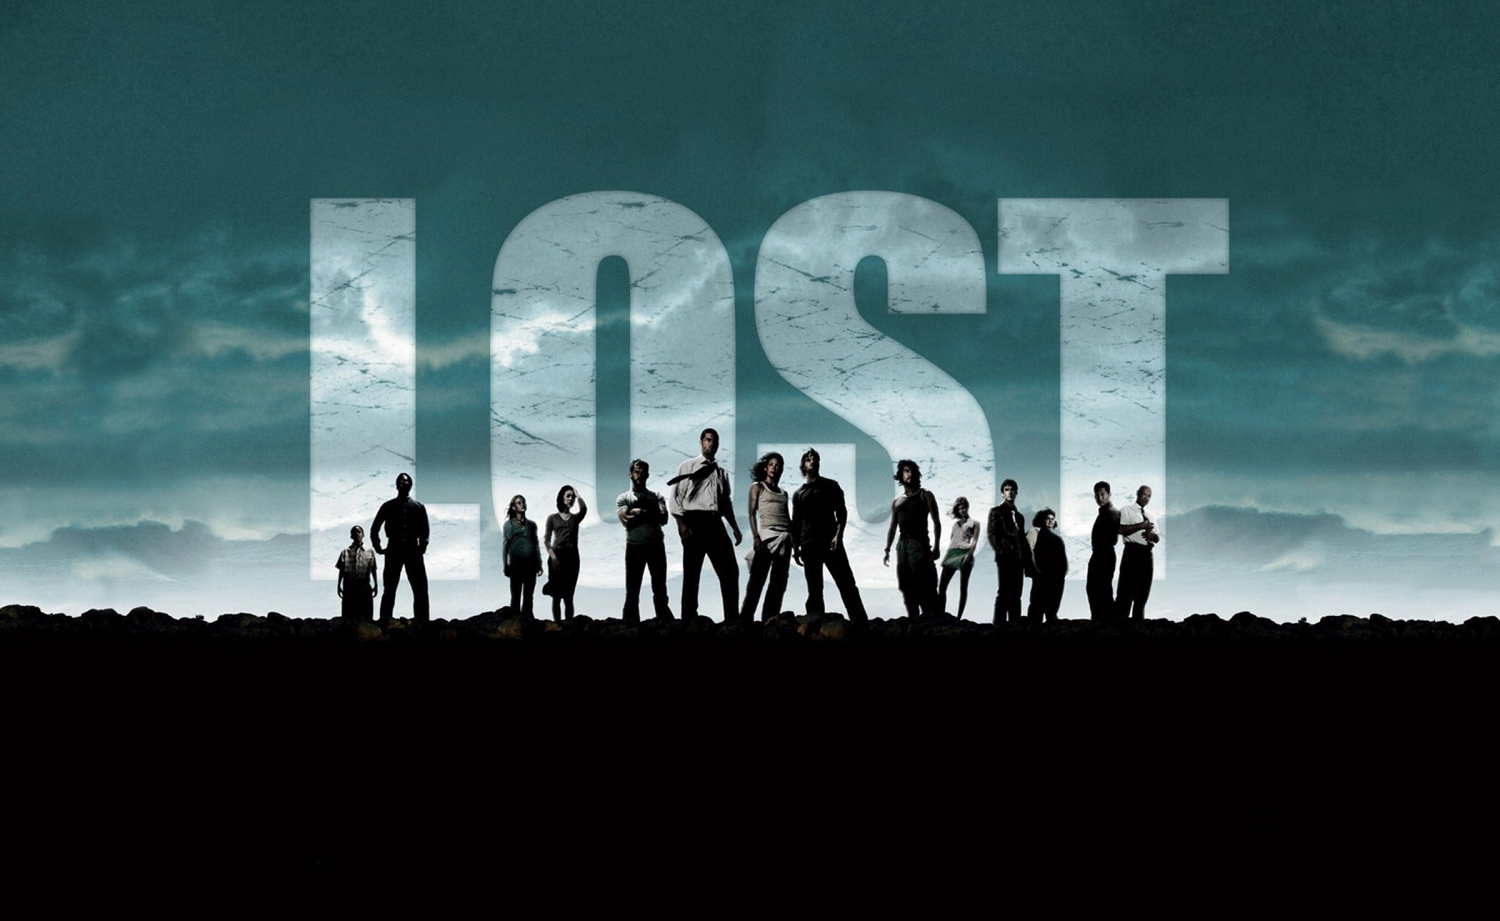 HBO: Lost – social media marketing